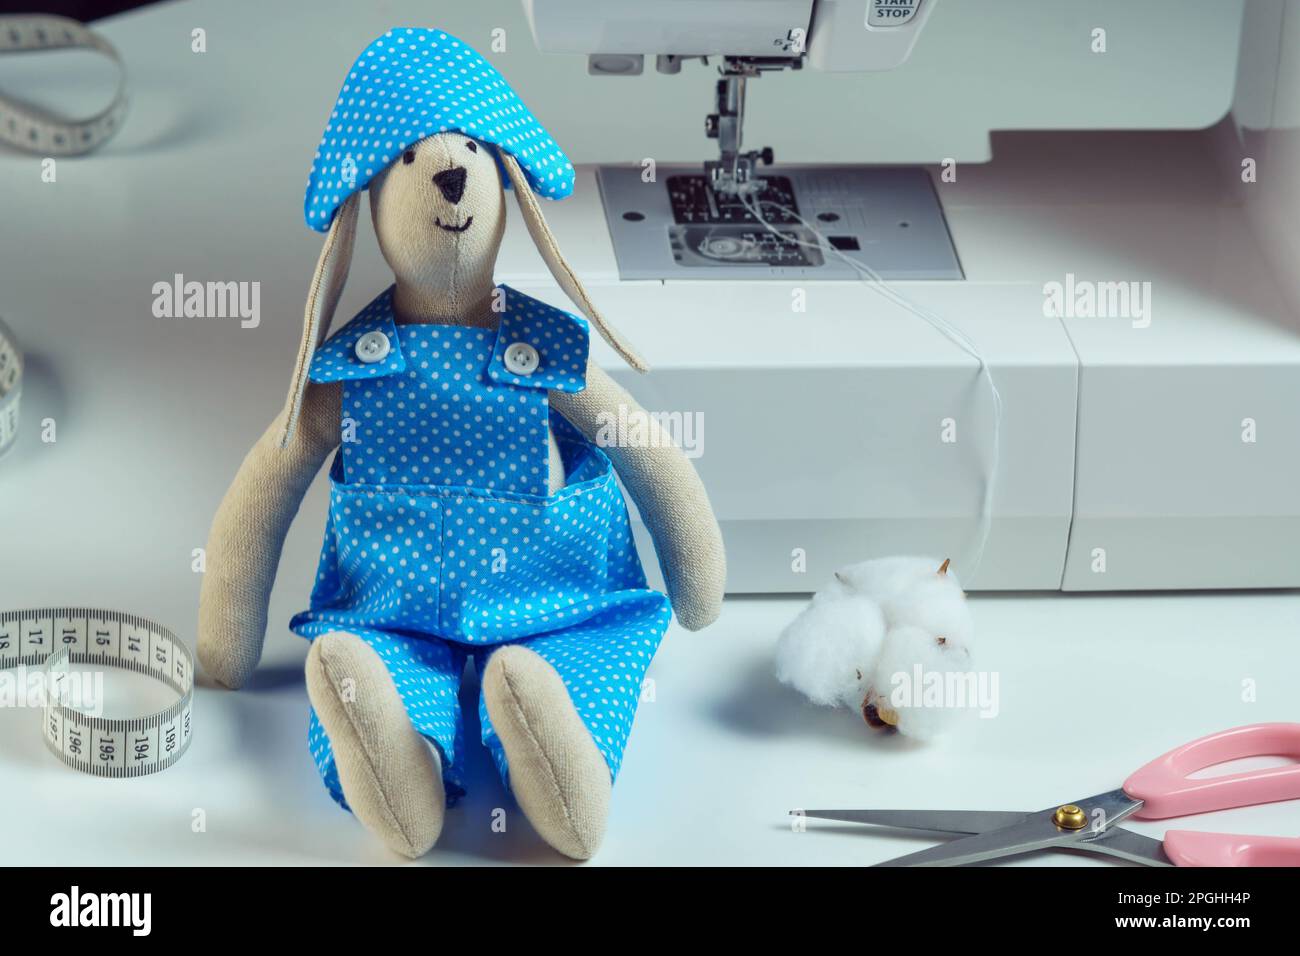 Jouet De Lapin En Peluche Cousu Souriant En Costume Bleu Design Et Chapeau  Assis Près De La Bande De Mesure En Coton Maigre à La Machine à Coudre